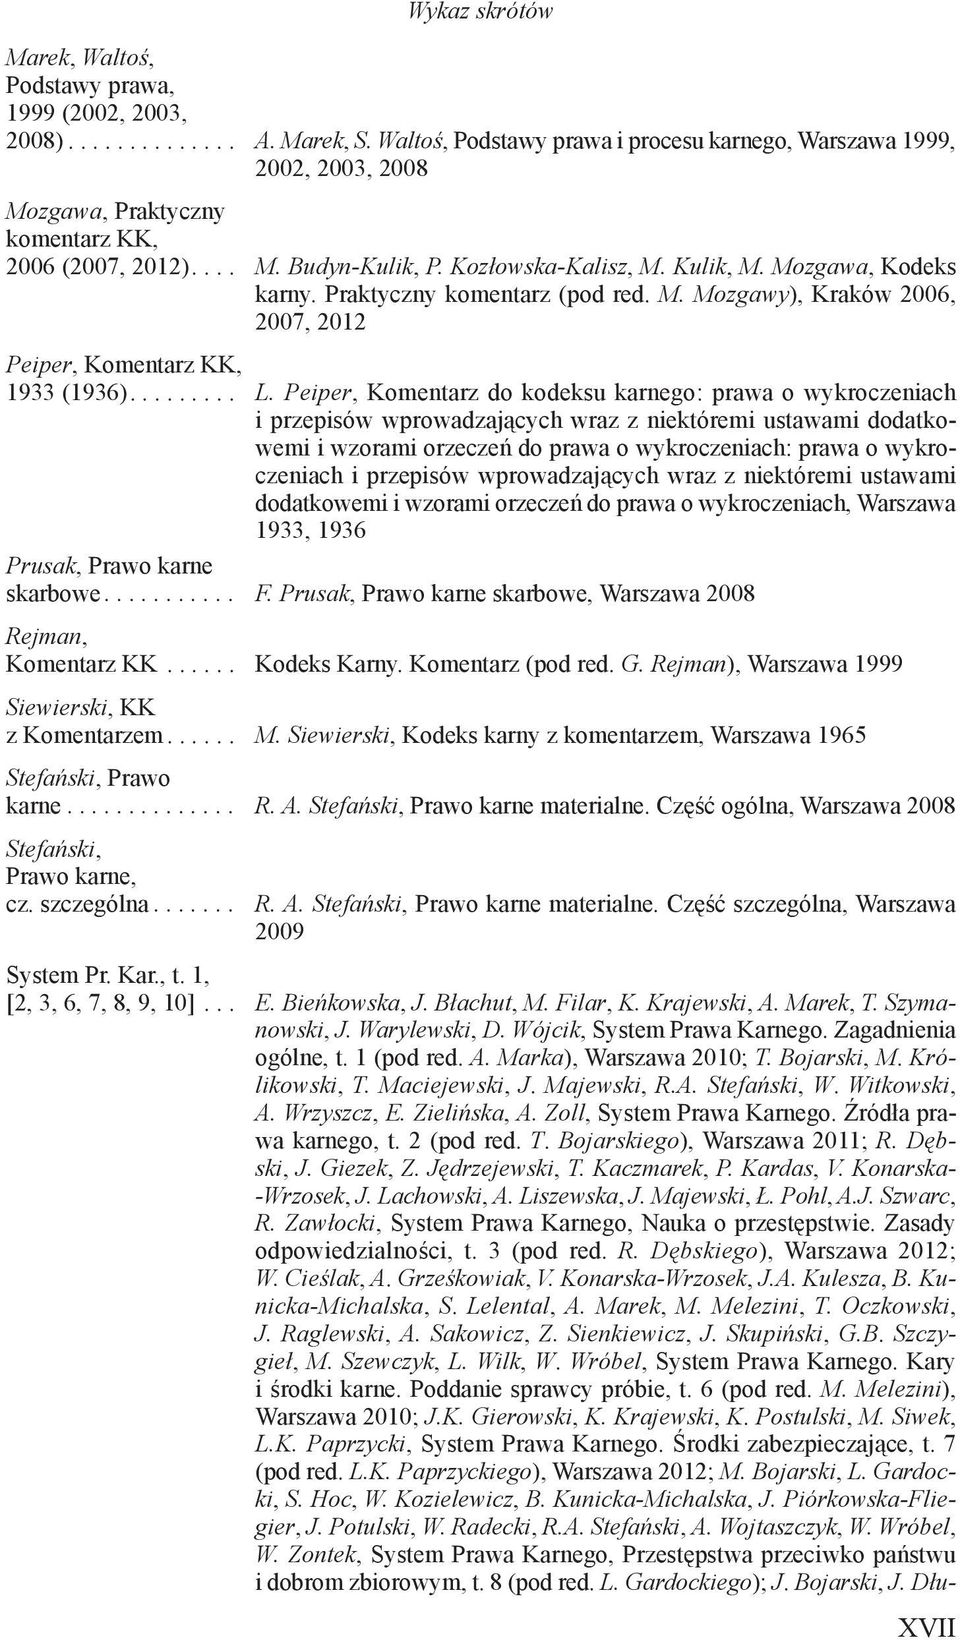 Mozgawa, Kodeks karny. Praktyczny komentarz (pod red. M. Mozgawy), Kraków 2006, 2007, 2012 Peiper, Komentarz KK, 1933 (1936)......... L.